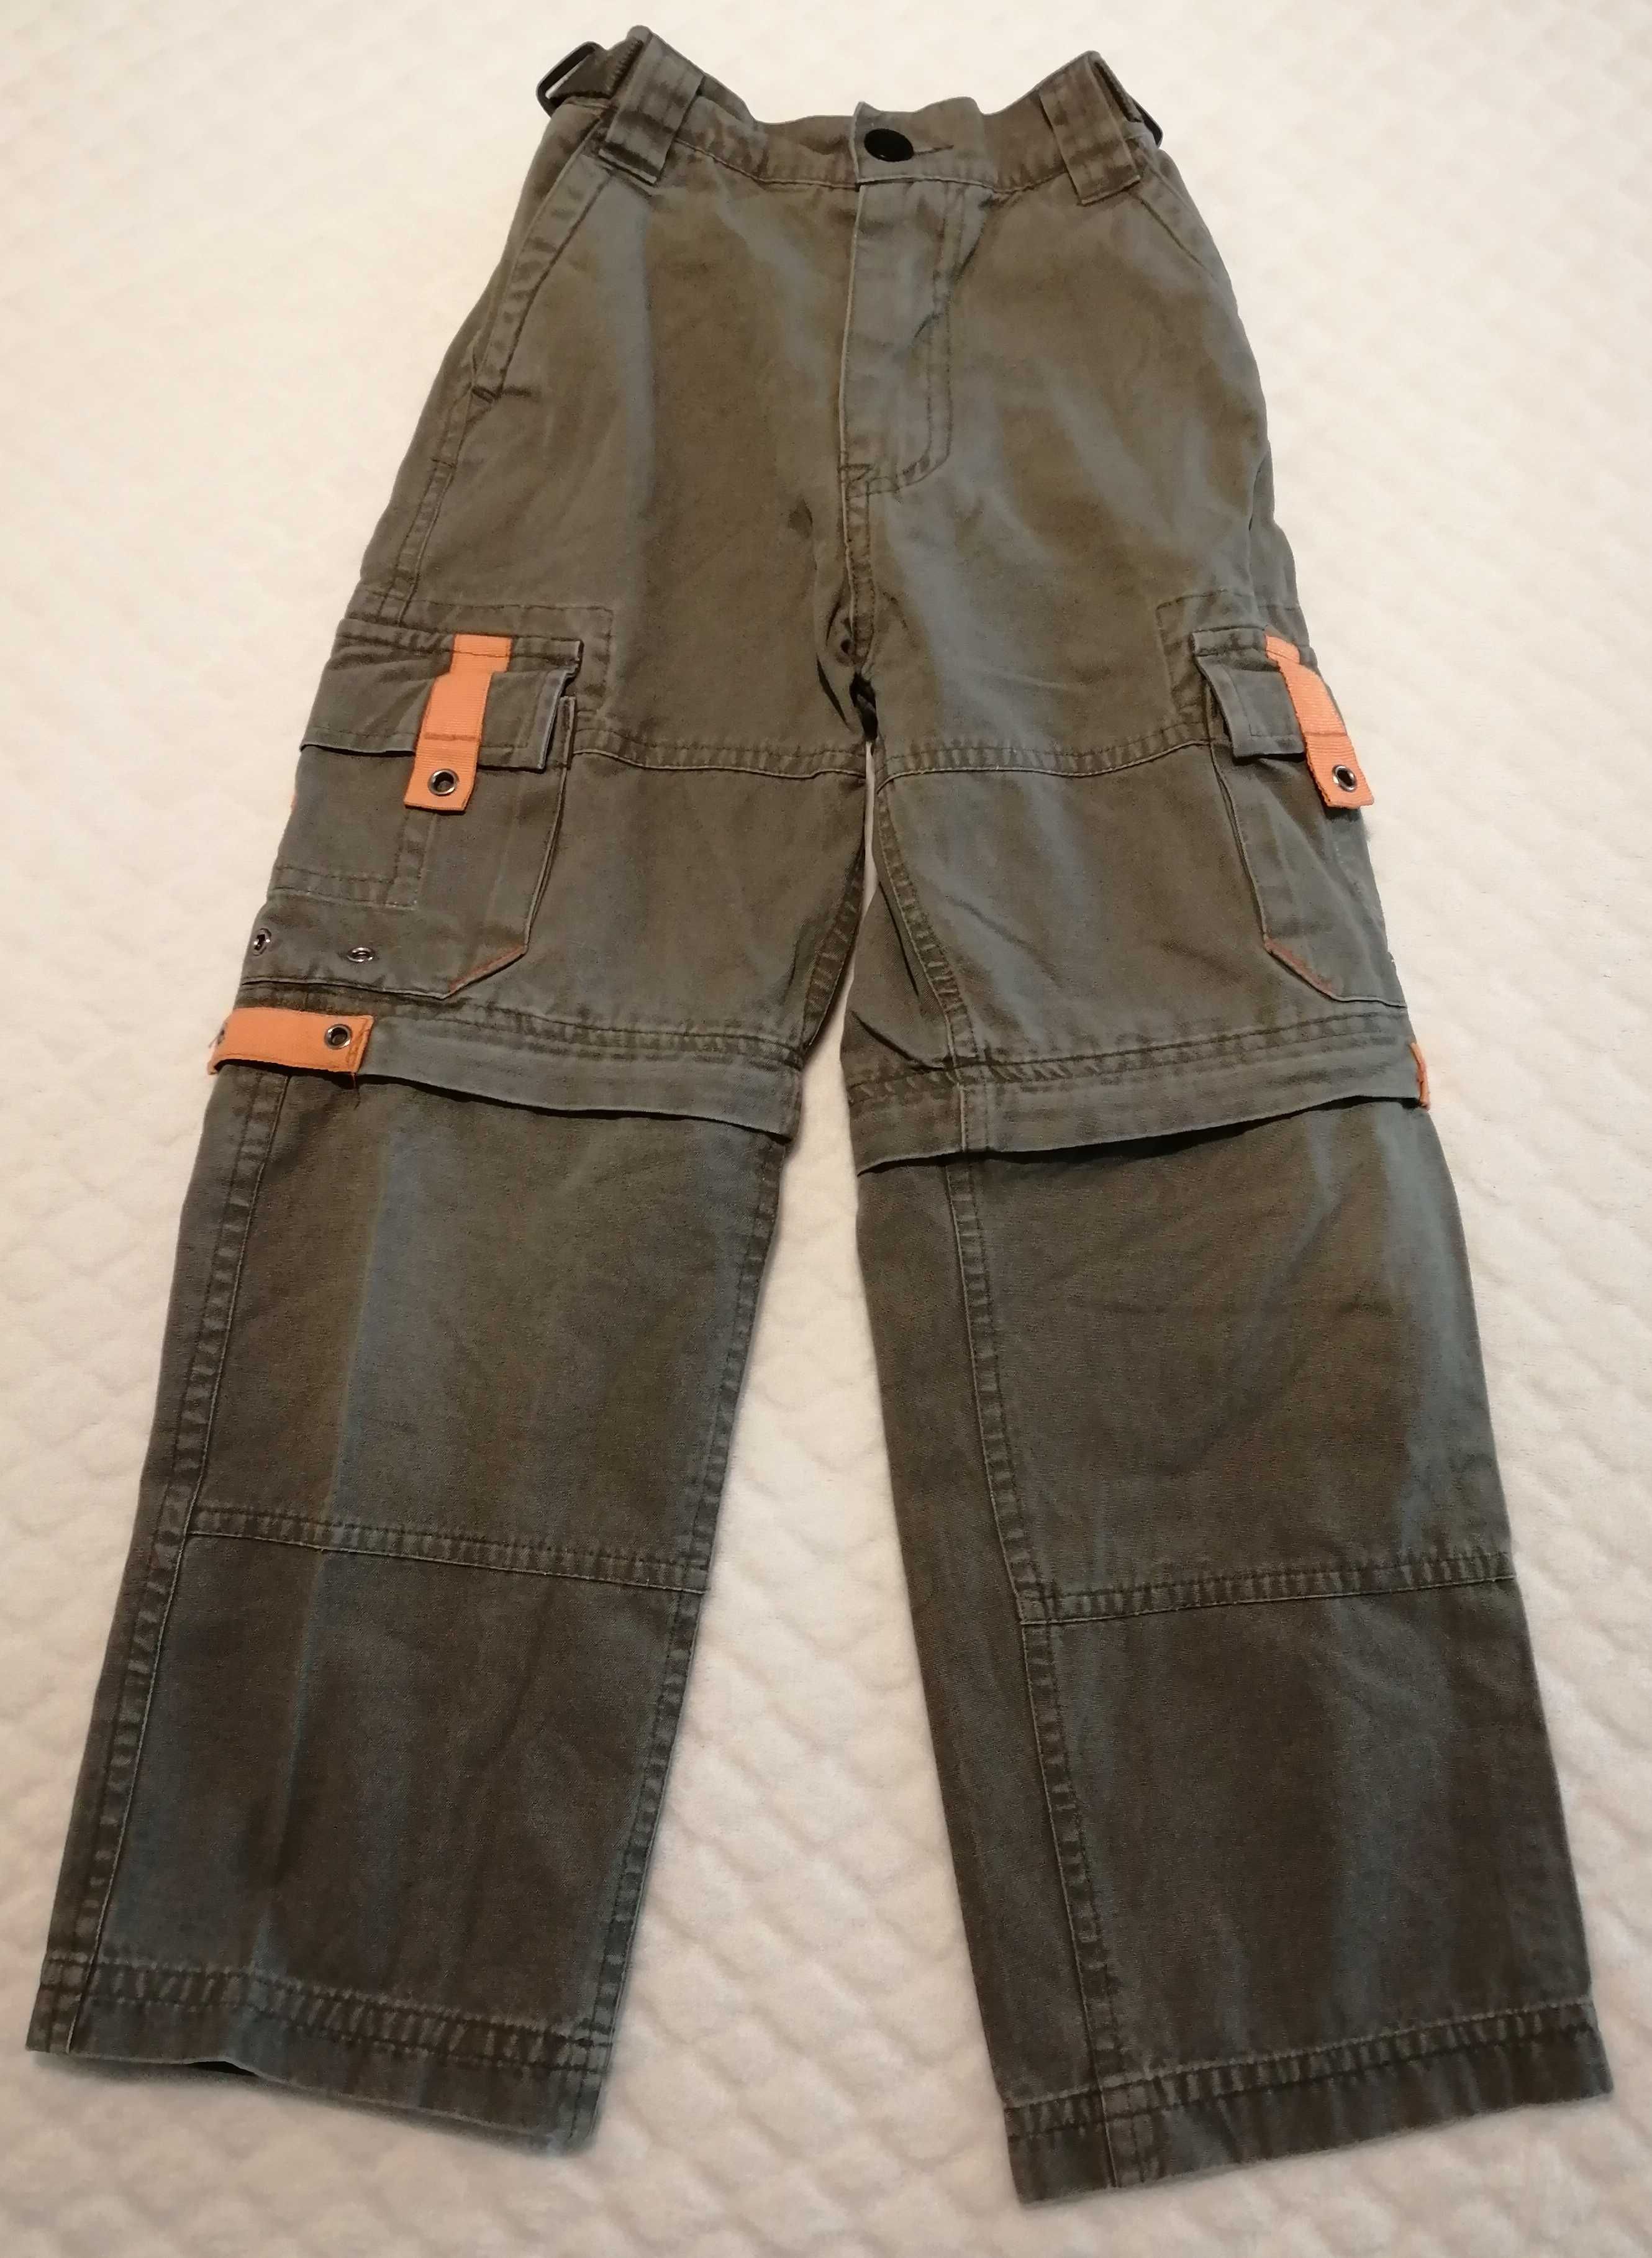 Spodnie z odpinanymi nogawkami, khaki, 110-116, Edgars (Odzież)